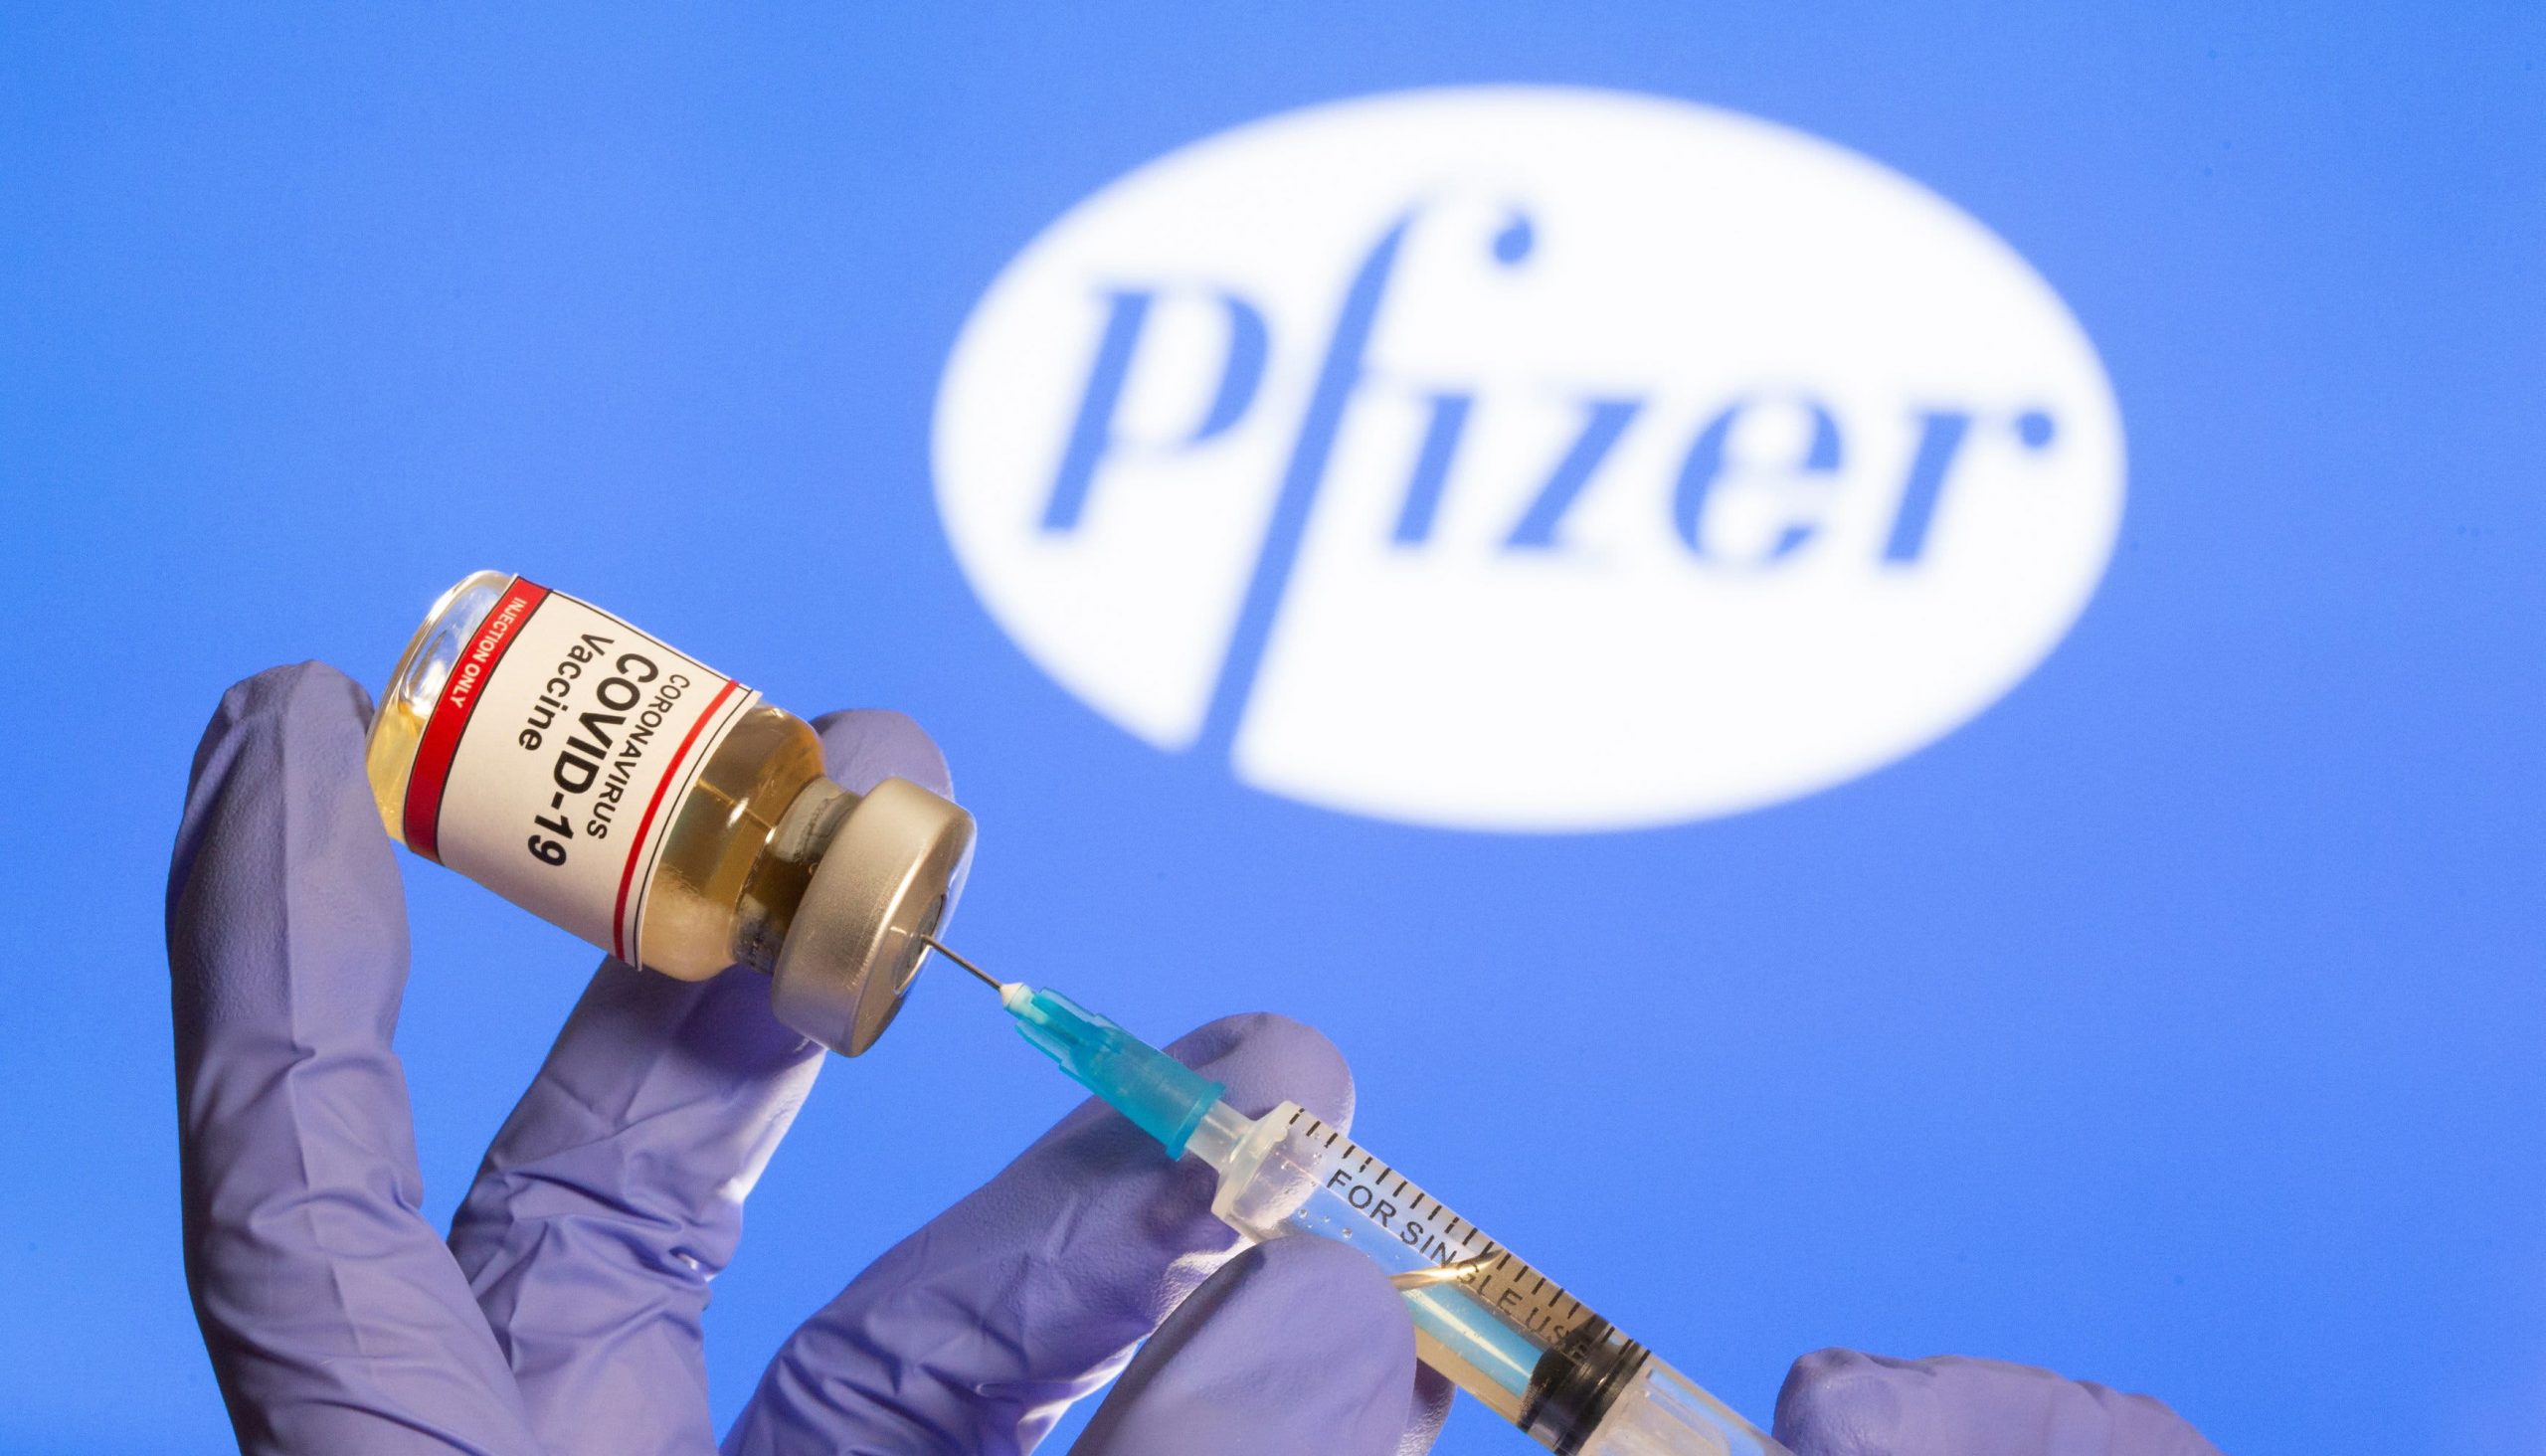 Pfizer nis të testojë efikasitetin e kombinimit të vaksinës COVID-19